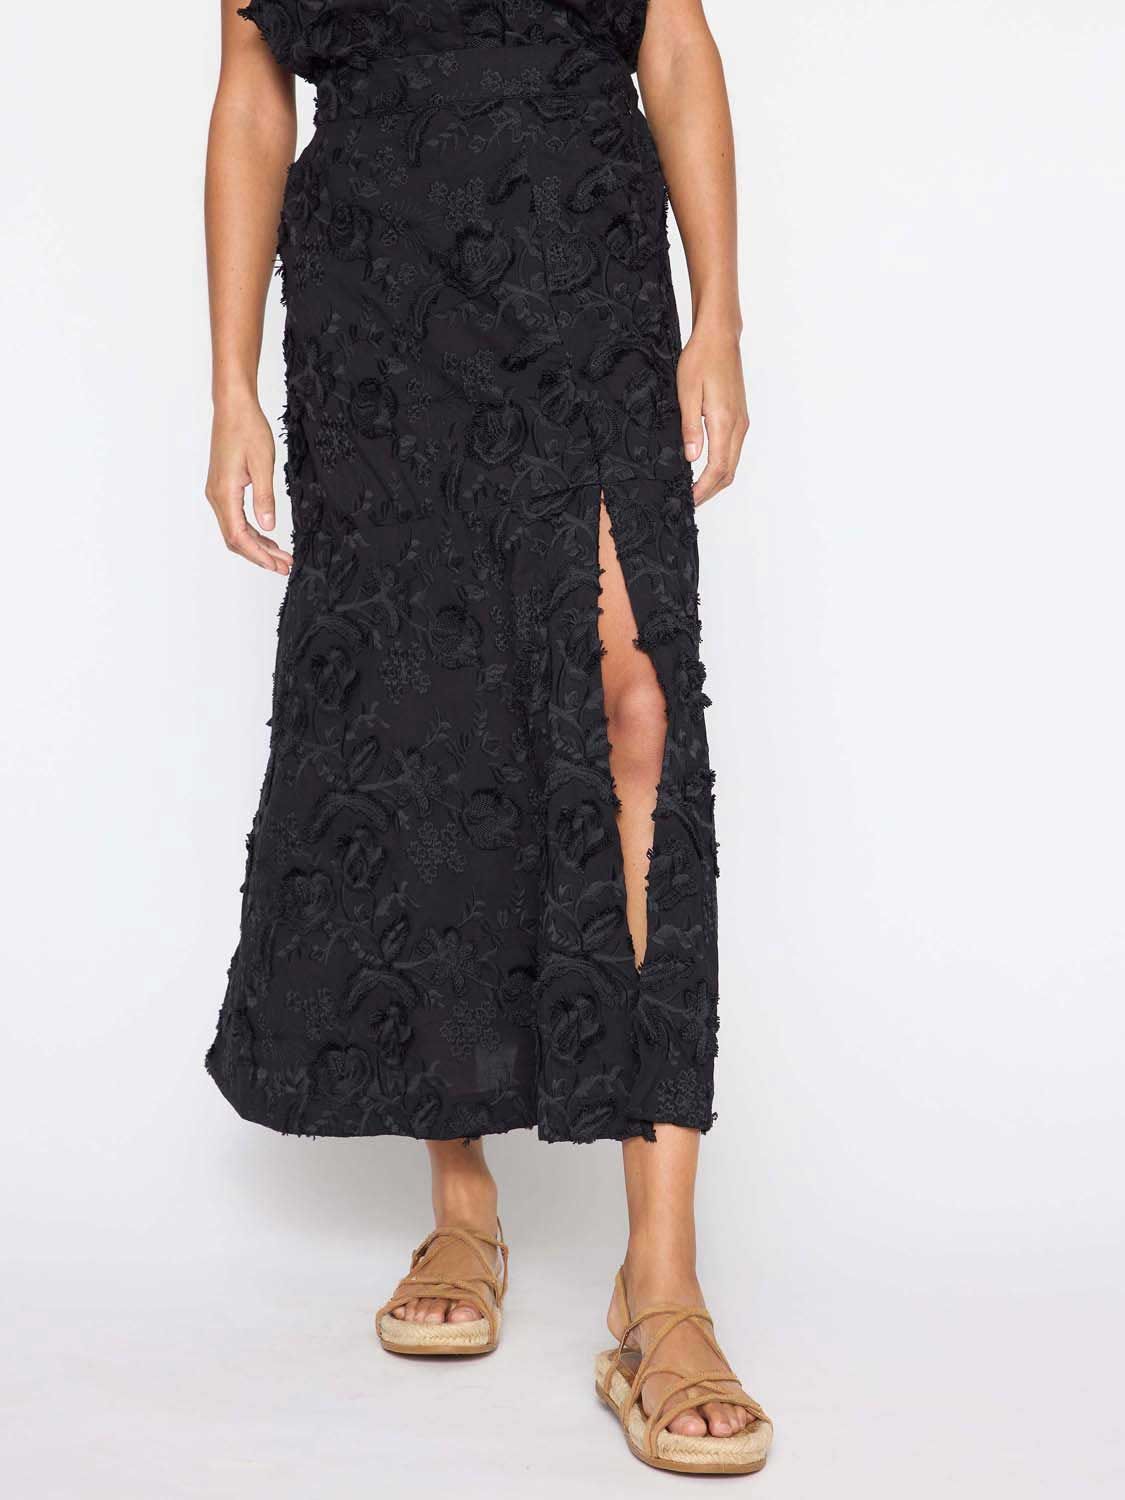 Brochu Walker | Women's Danni Cotton Midi Skirt in Black | Brochu Walker